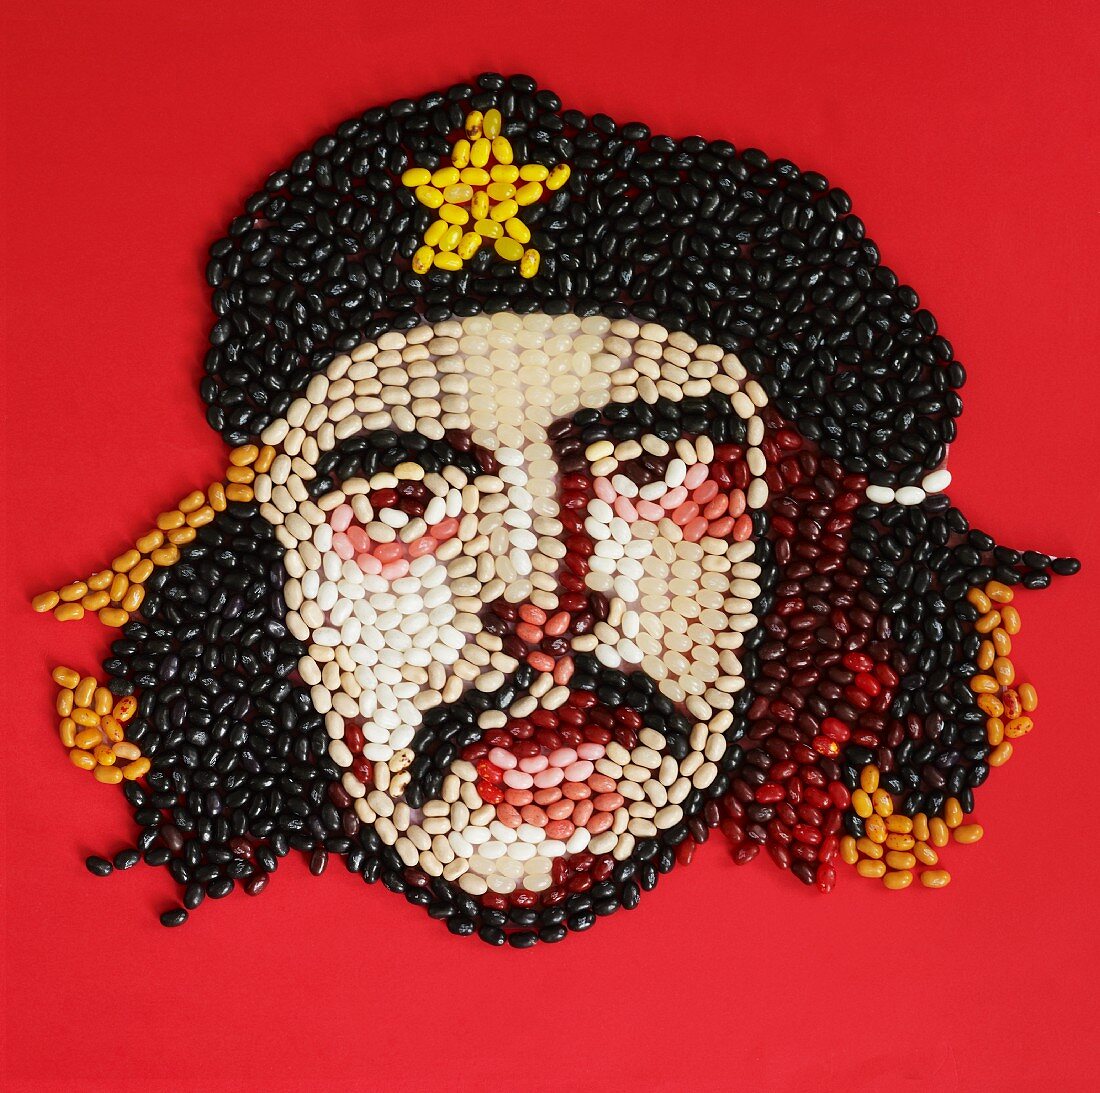 Che Guevara Gesicht aus Jelly Beans